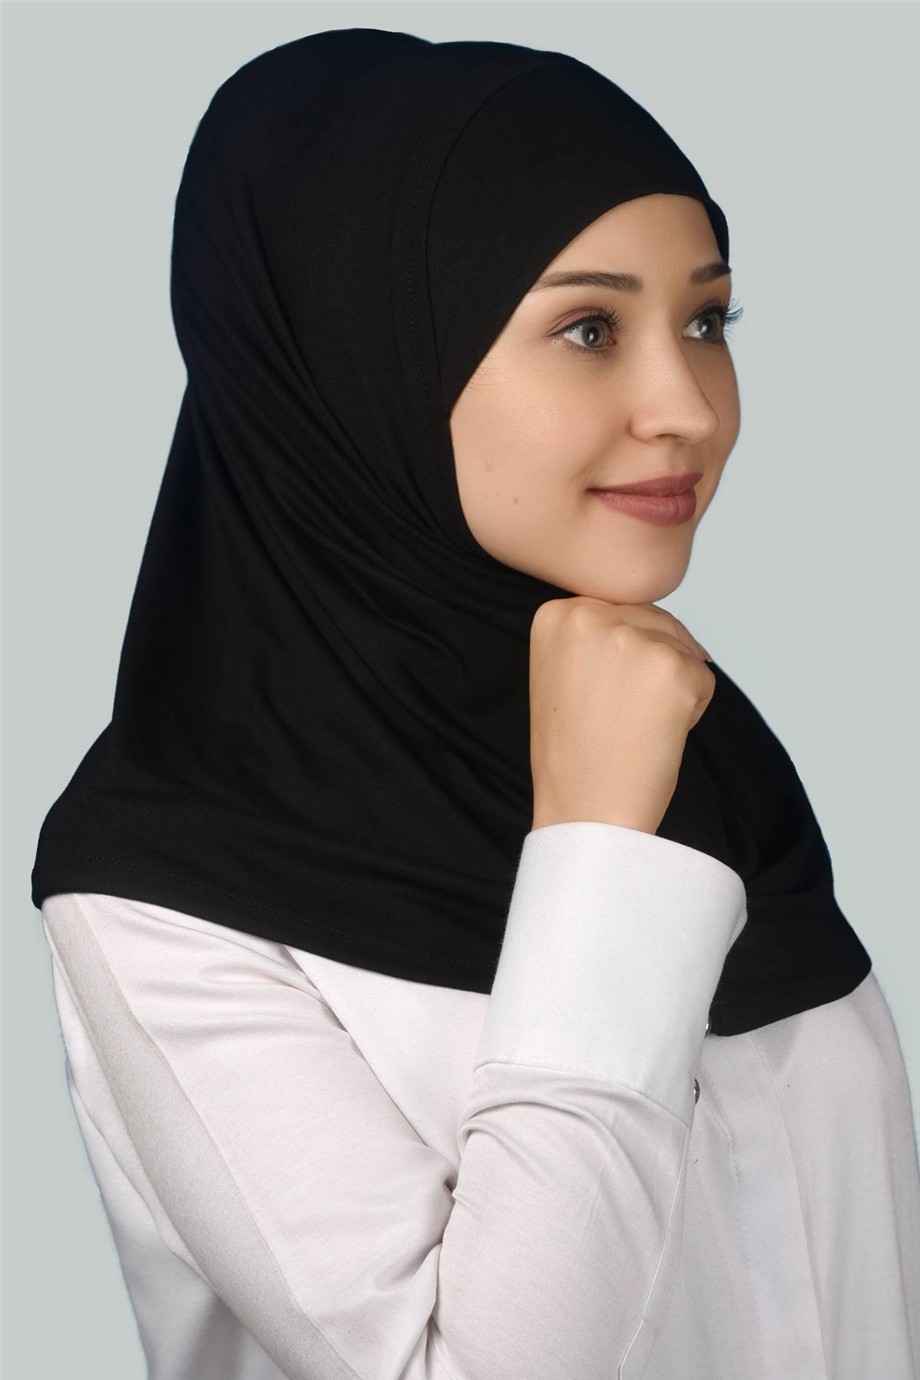 Hazır Türban Pratik Eşarp Tesettür Hijab - Namaz Örtüsü